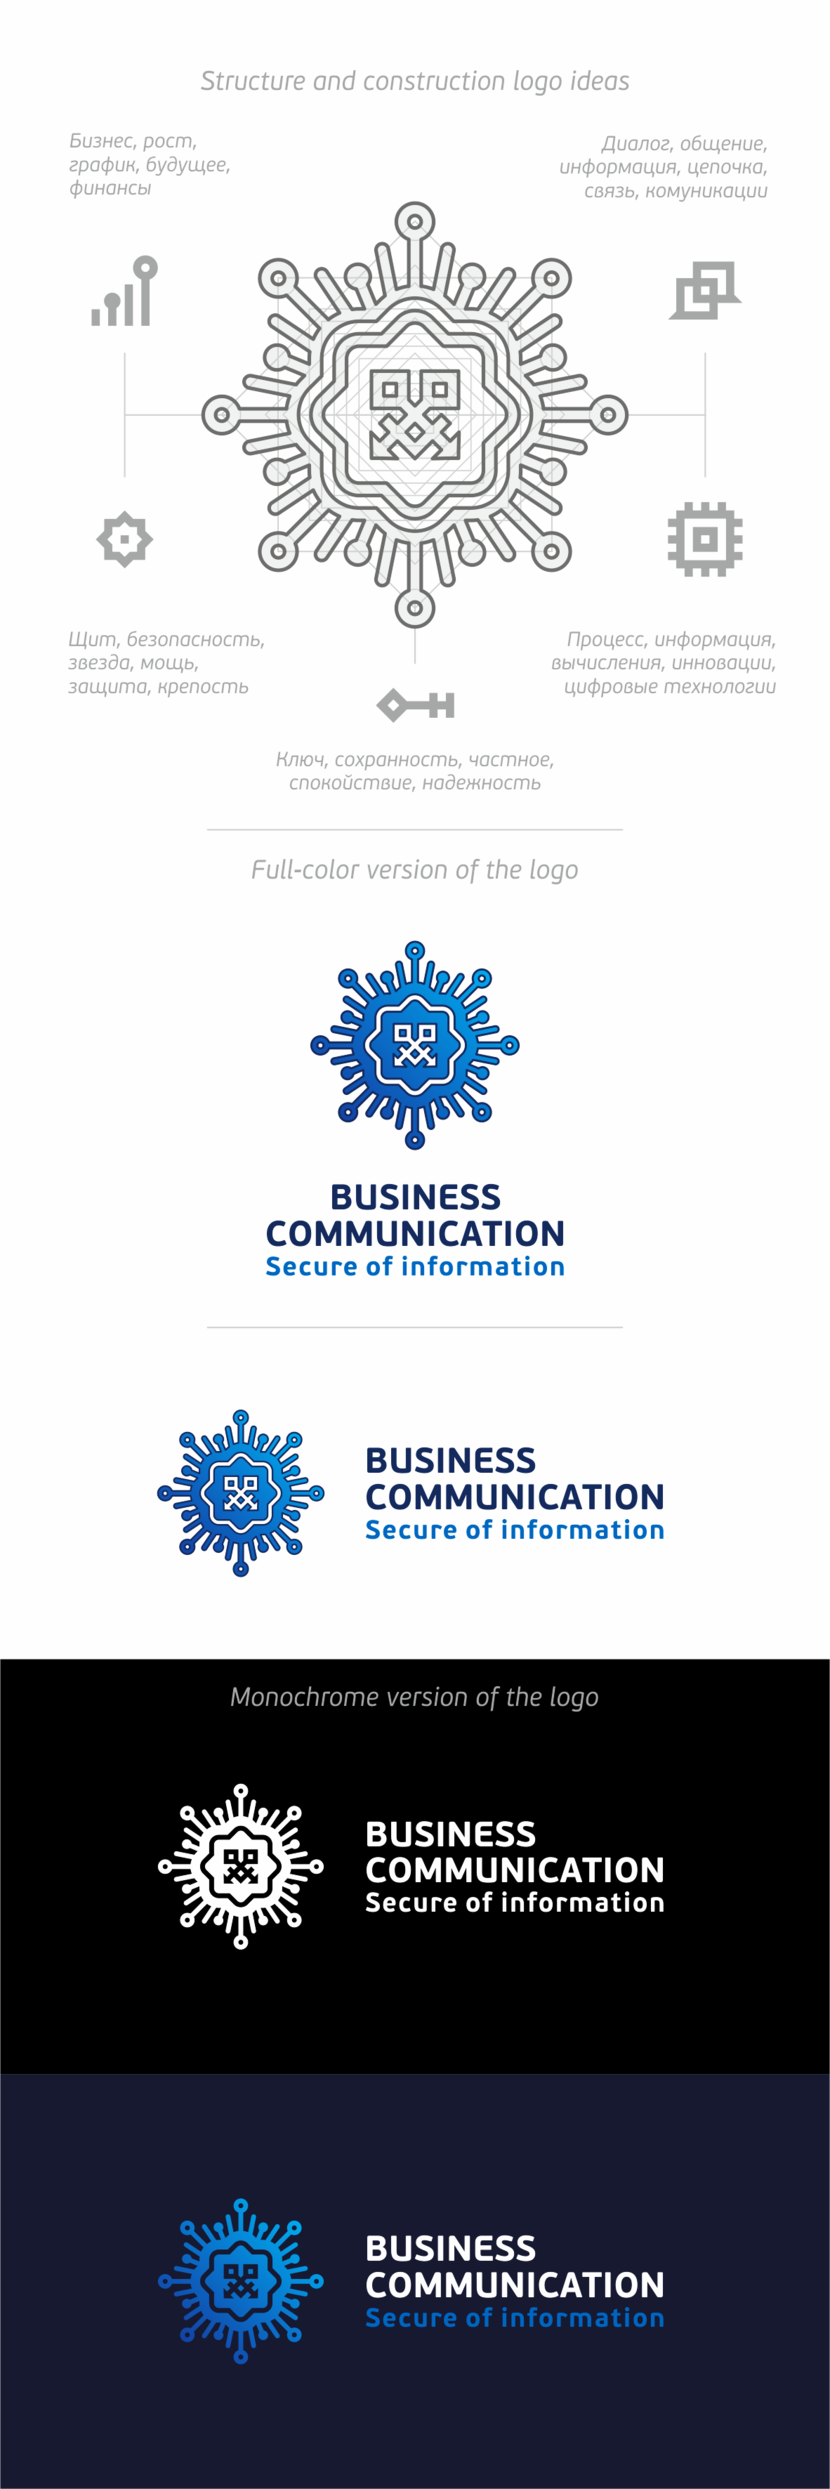 + вариант) - Разработать фирменный логотип Бизнес Коммуникации